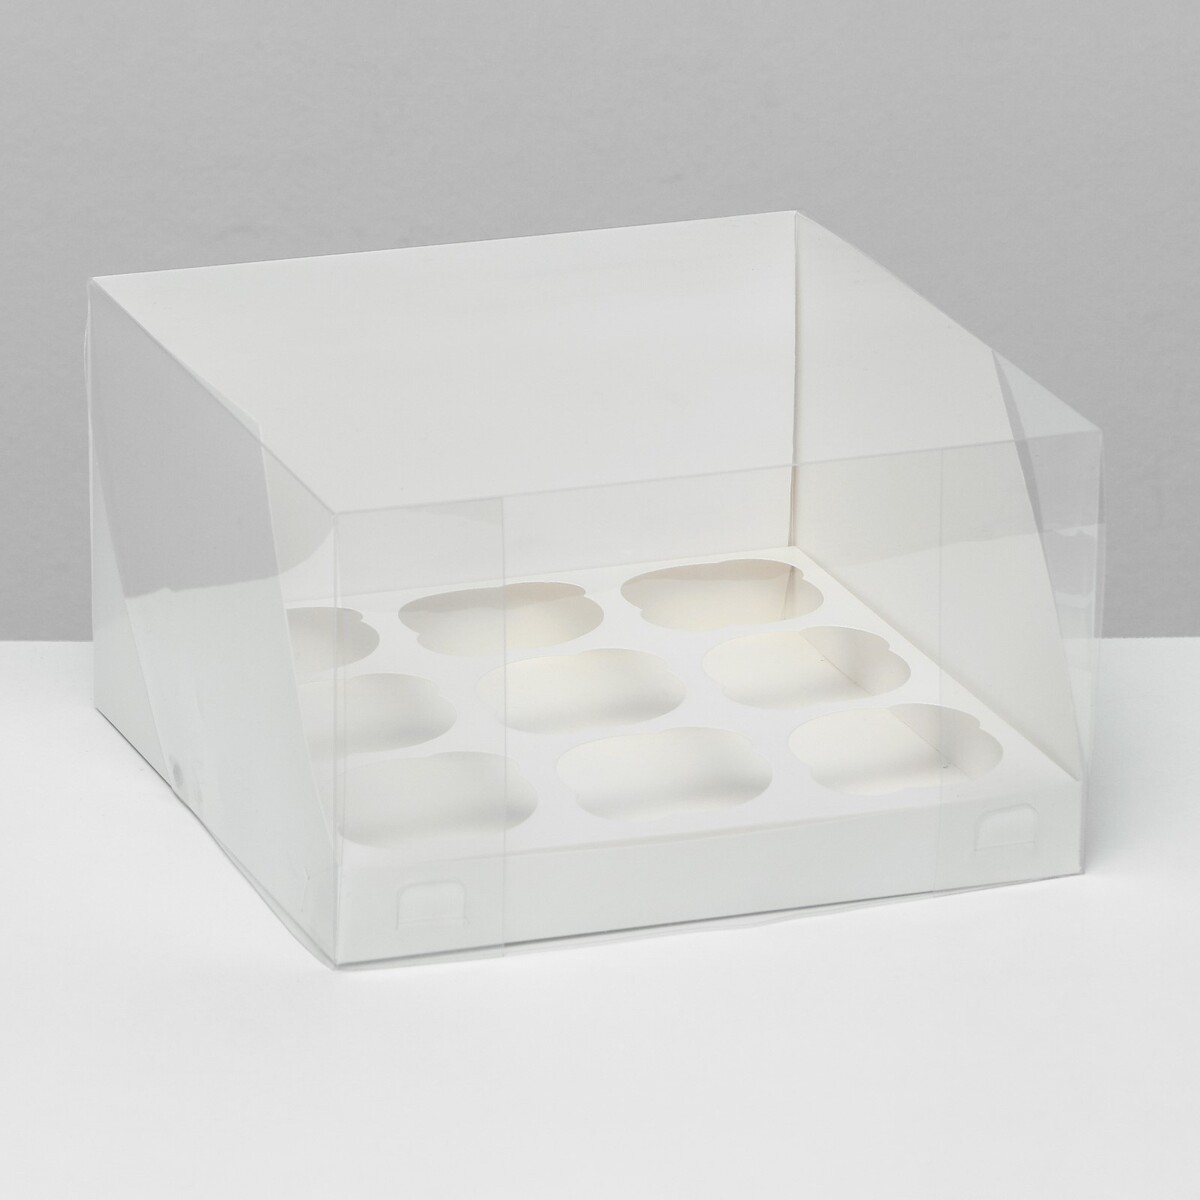 Кондитерская складная коробка для 9 капкейков белая 23,5 x 23 x 14 см кондитерская складная коробка для 4 капкейков 16 х 16 х 10 красная